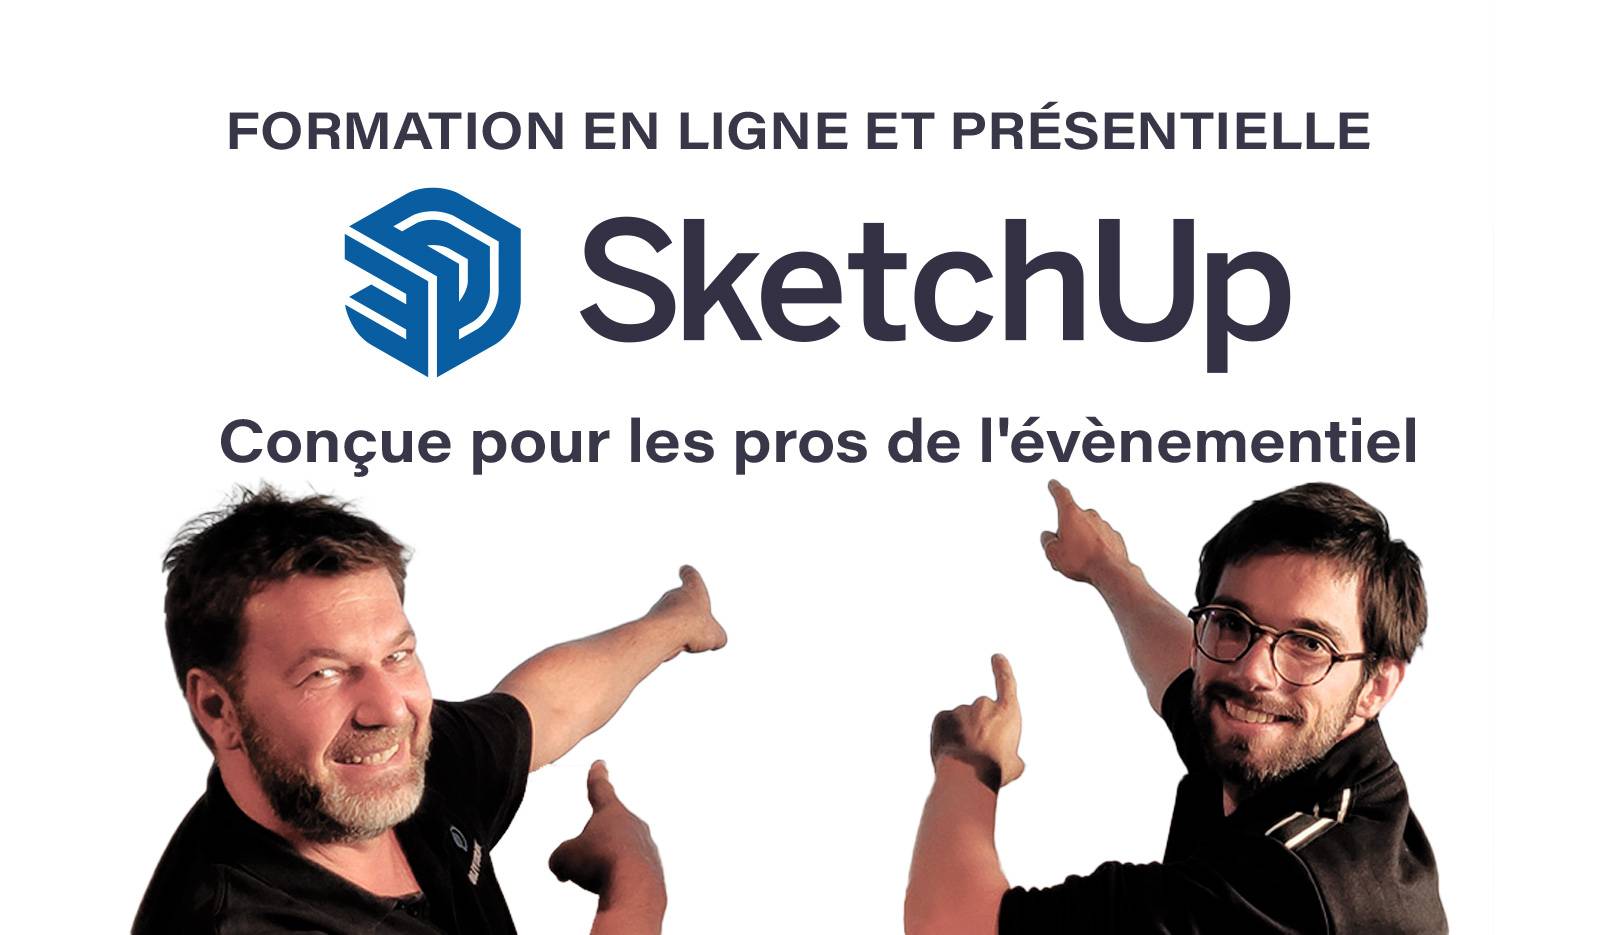 formation SketchUp spécialement conçue pour les pros de l'événementiel